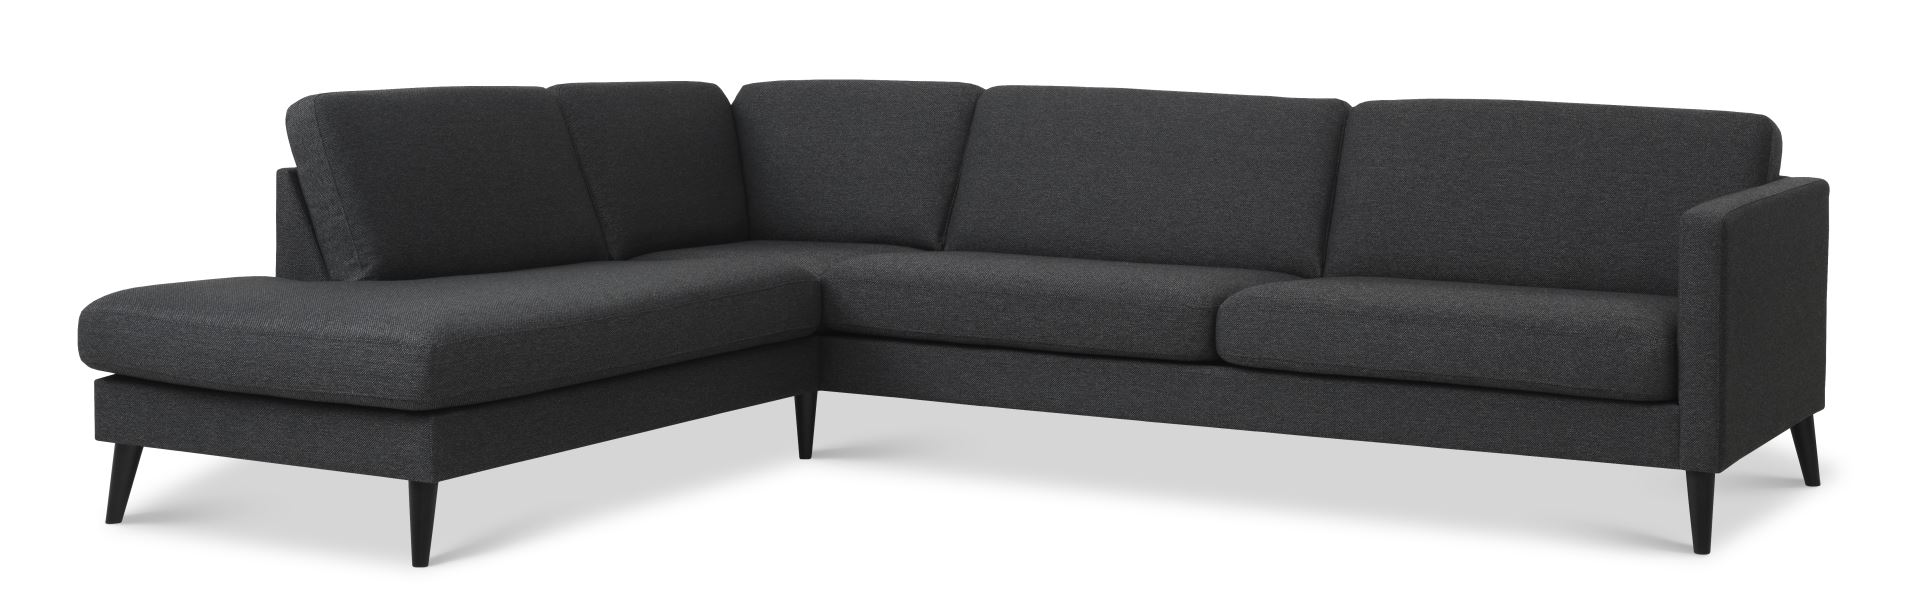 Ask sæt 60 stor OE sofa, m. venstre chaiselong - antracitgrå polyester stof og sort træ